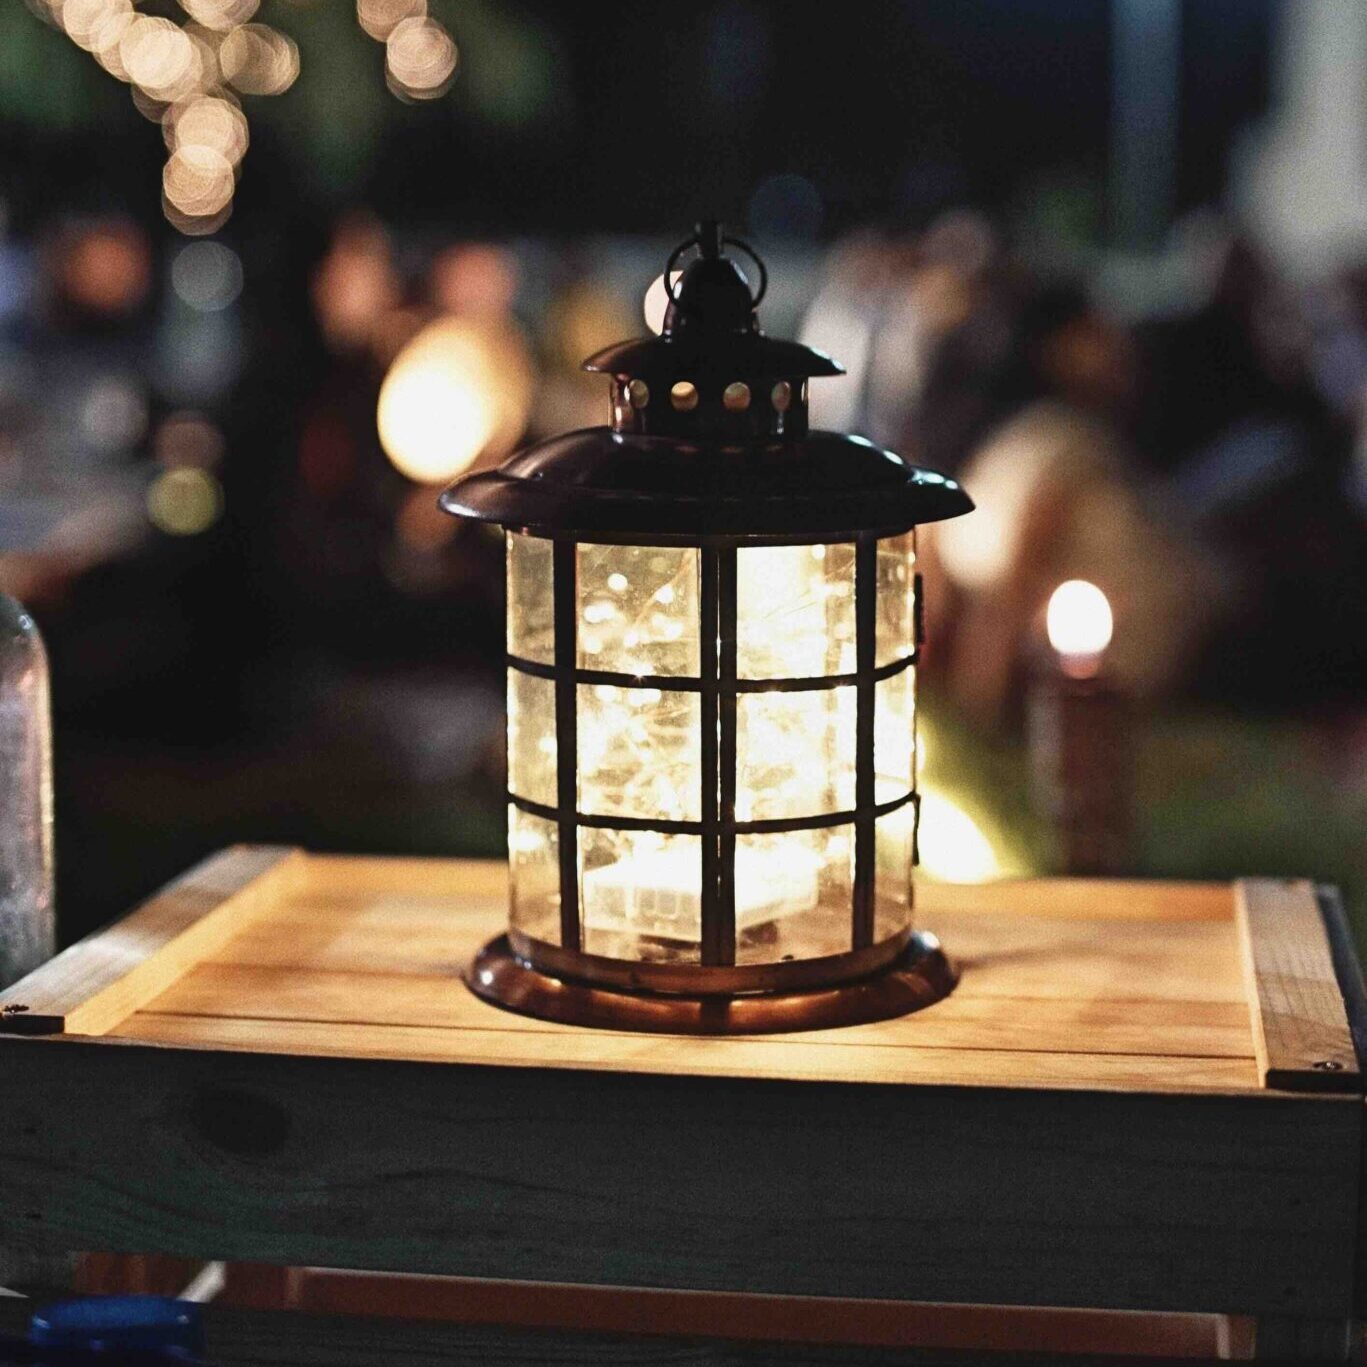 Lantern on a wooden chest, an evening